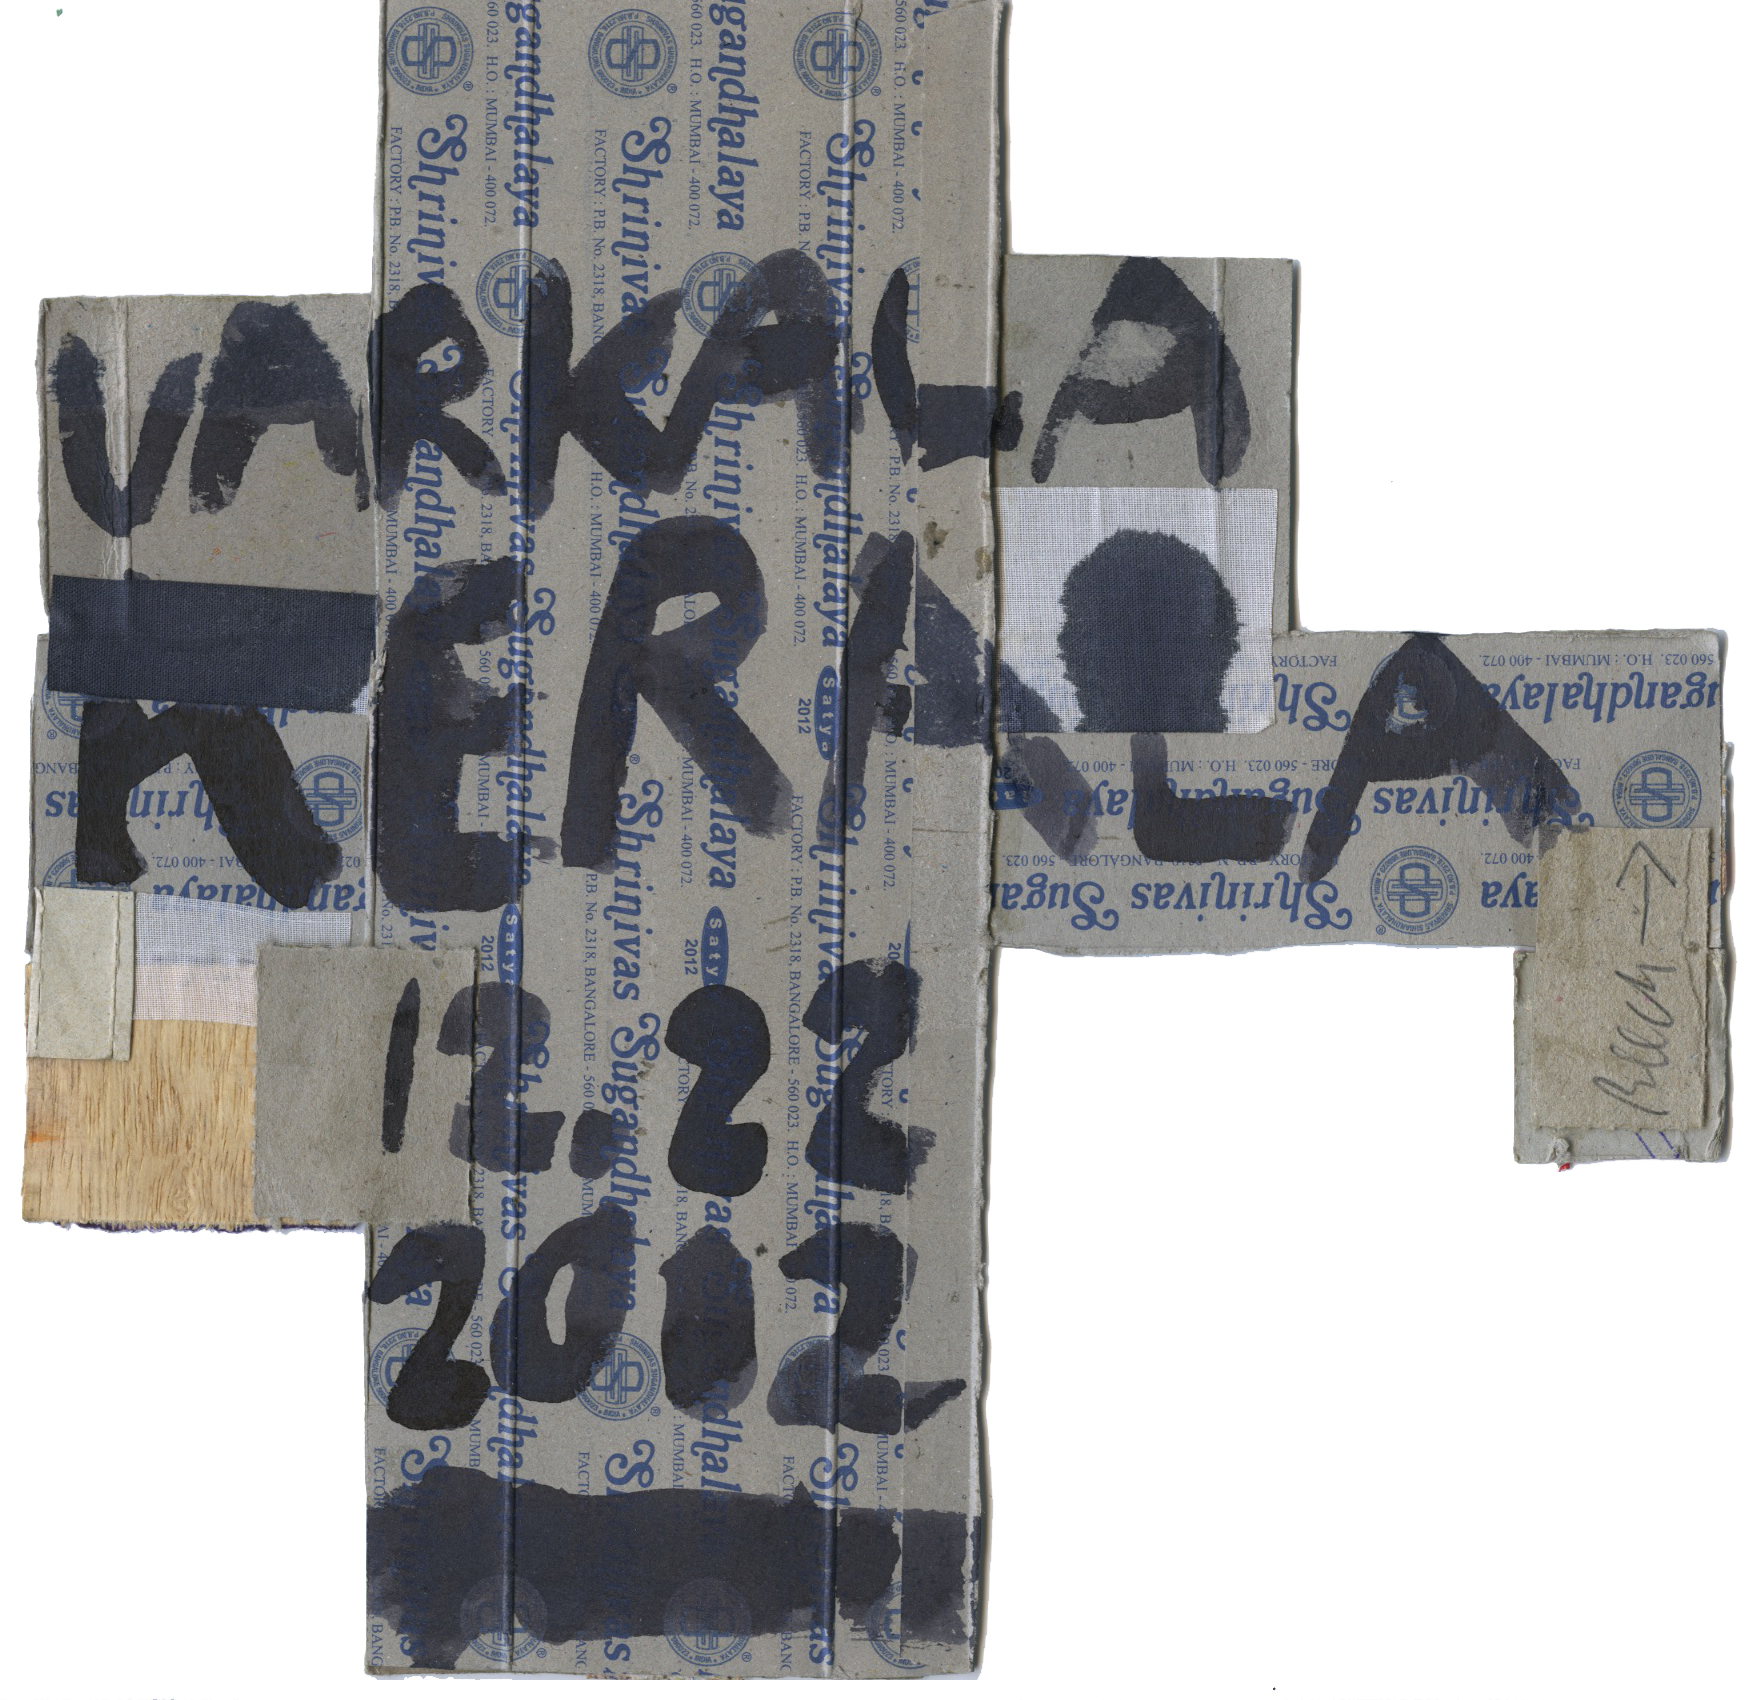  India Drawing Varkala 2012 8.5 x 8.5 inches 